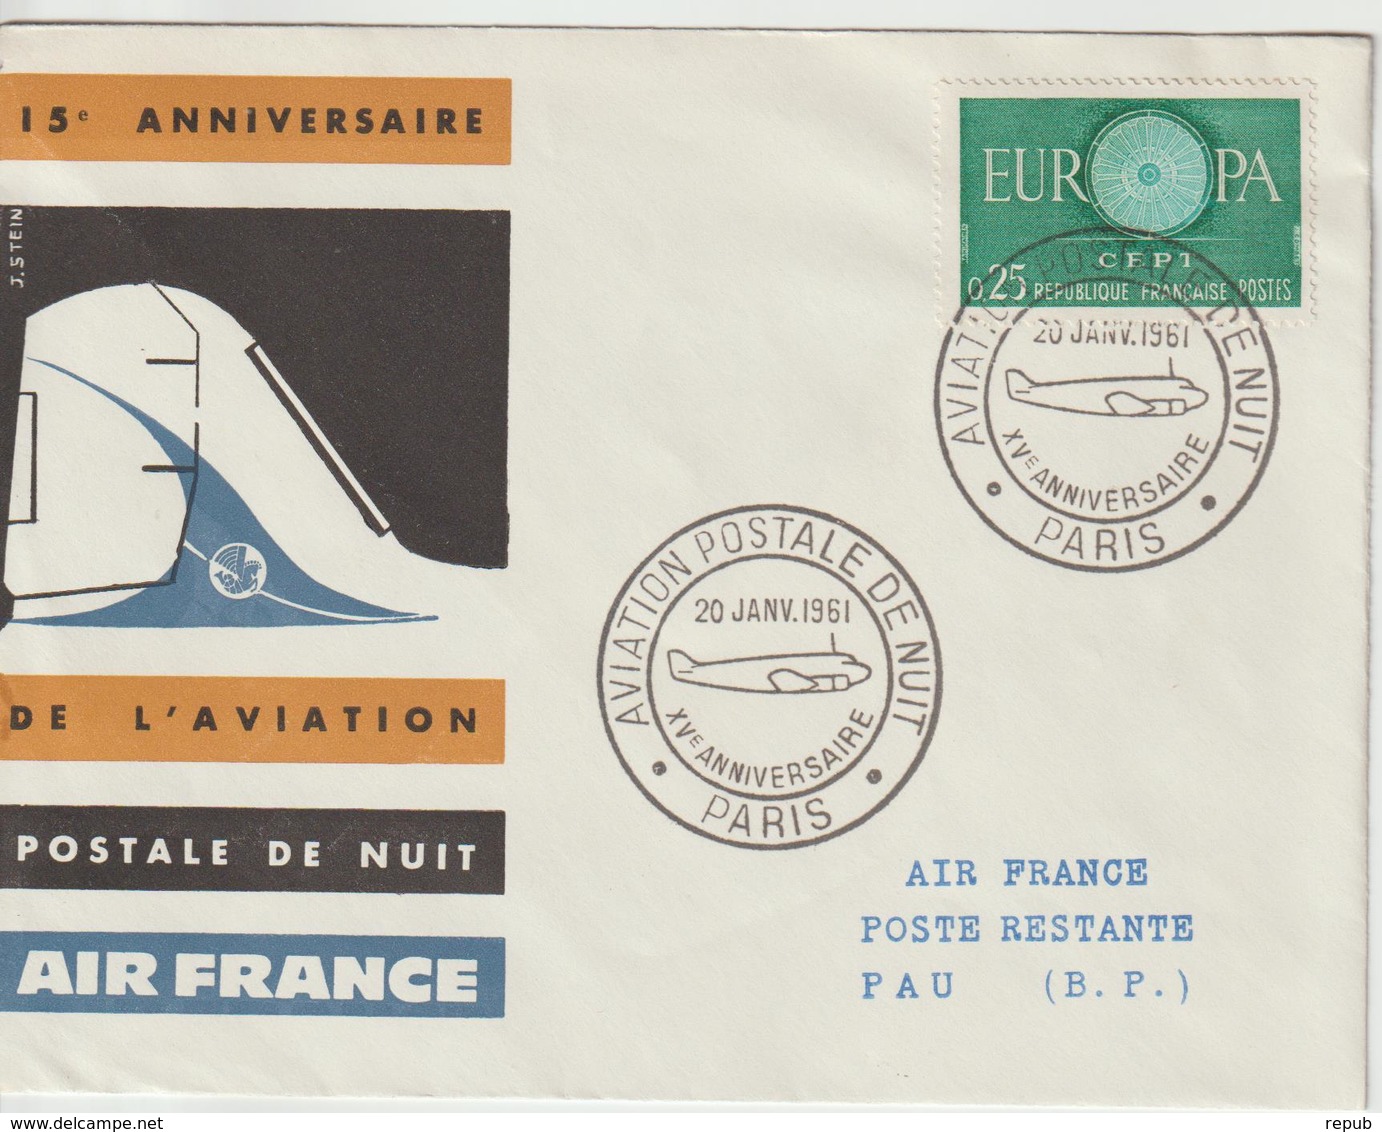 France 1961 15ème Anniversaire Postale De Nuit - First Flight Covers